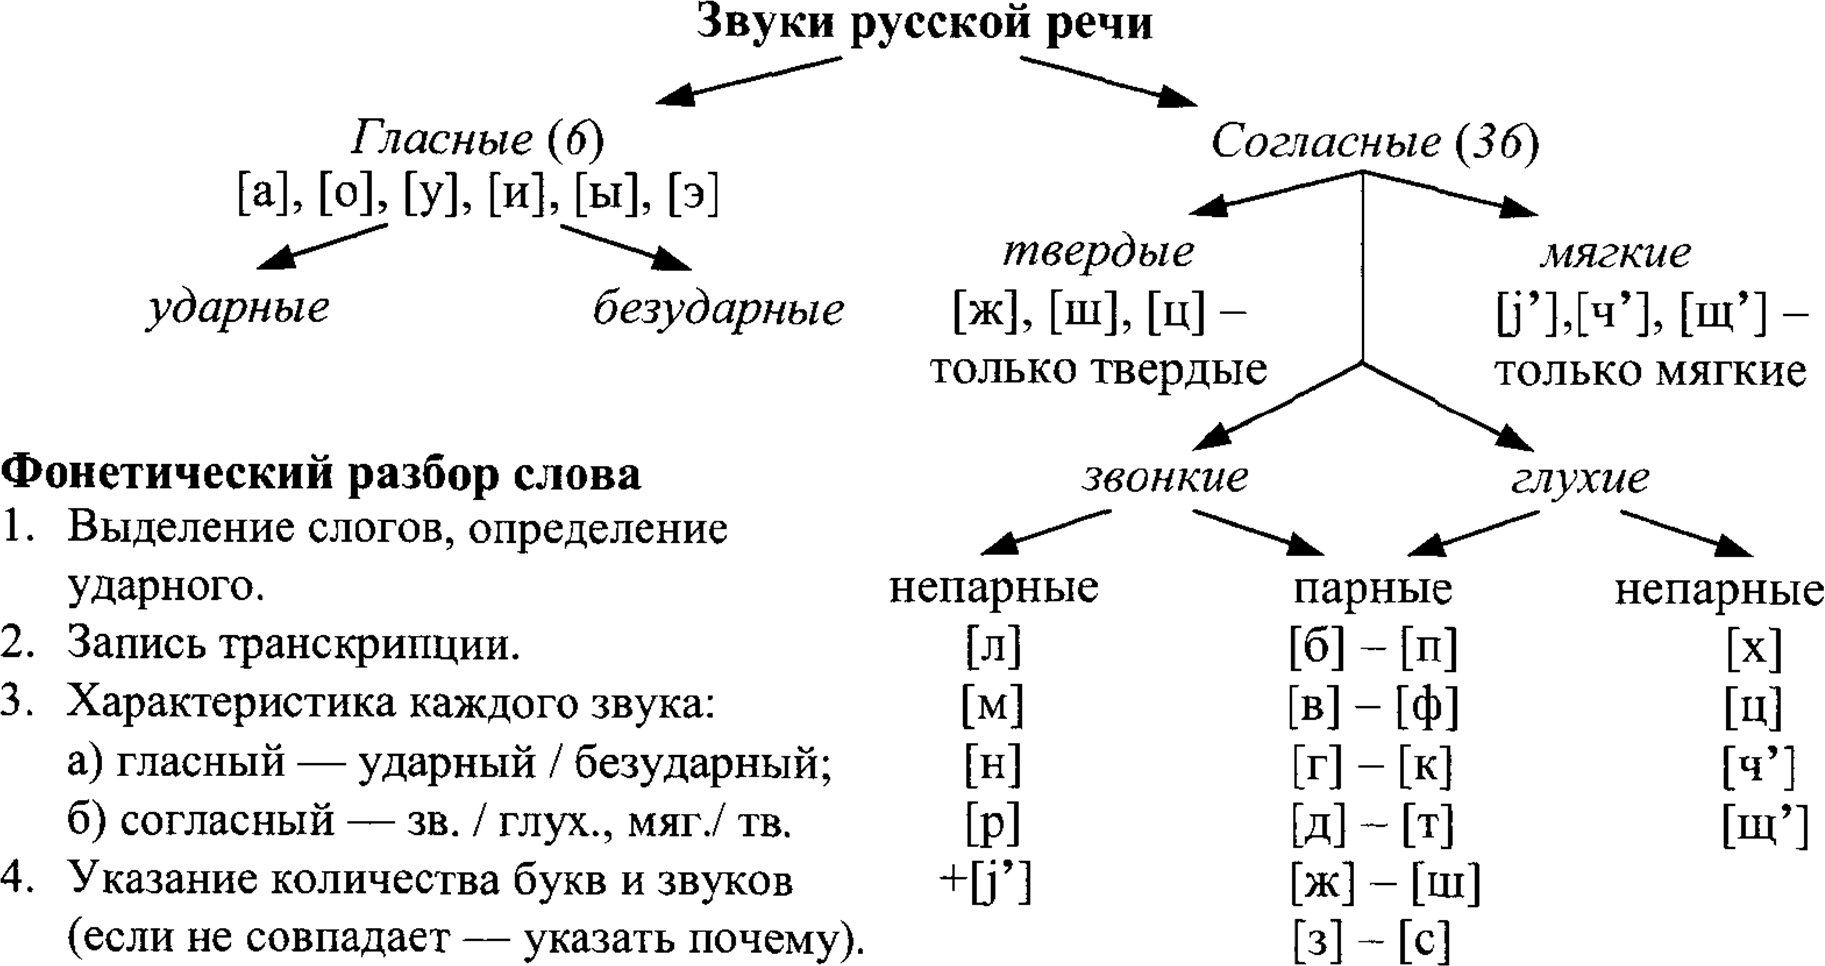 Звуки русской речи и фонетический разбор слова